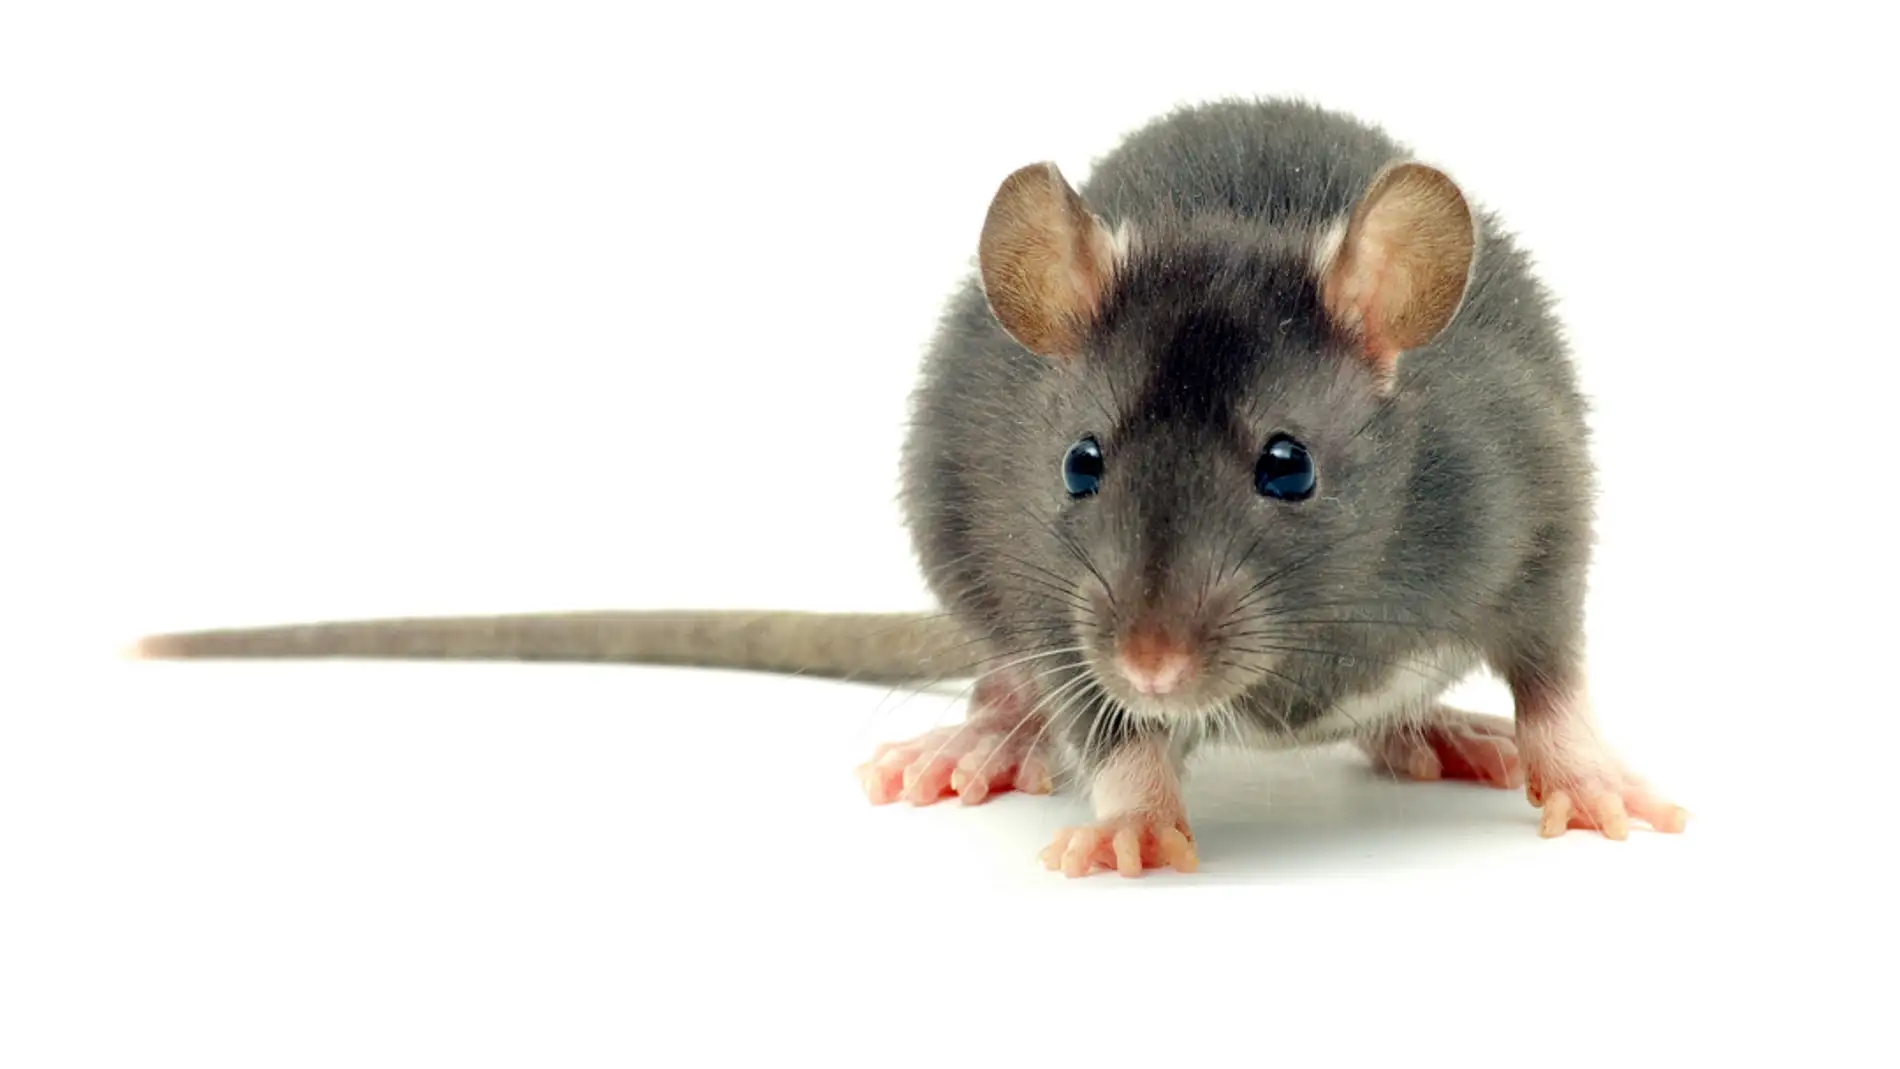 ¿Matar a una rata en tu casa está penado? Con la nueva ley de bienestar animal podría acarrear penas de prisión de entre 6 y 18 meses